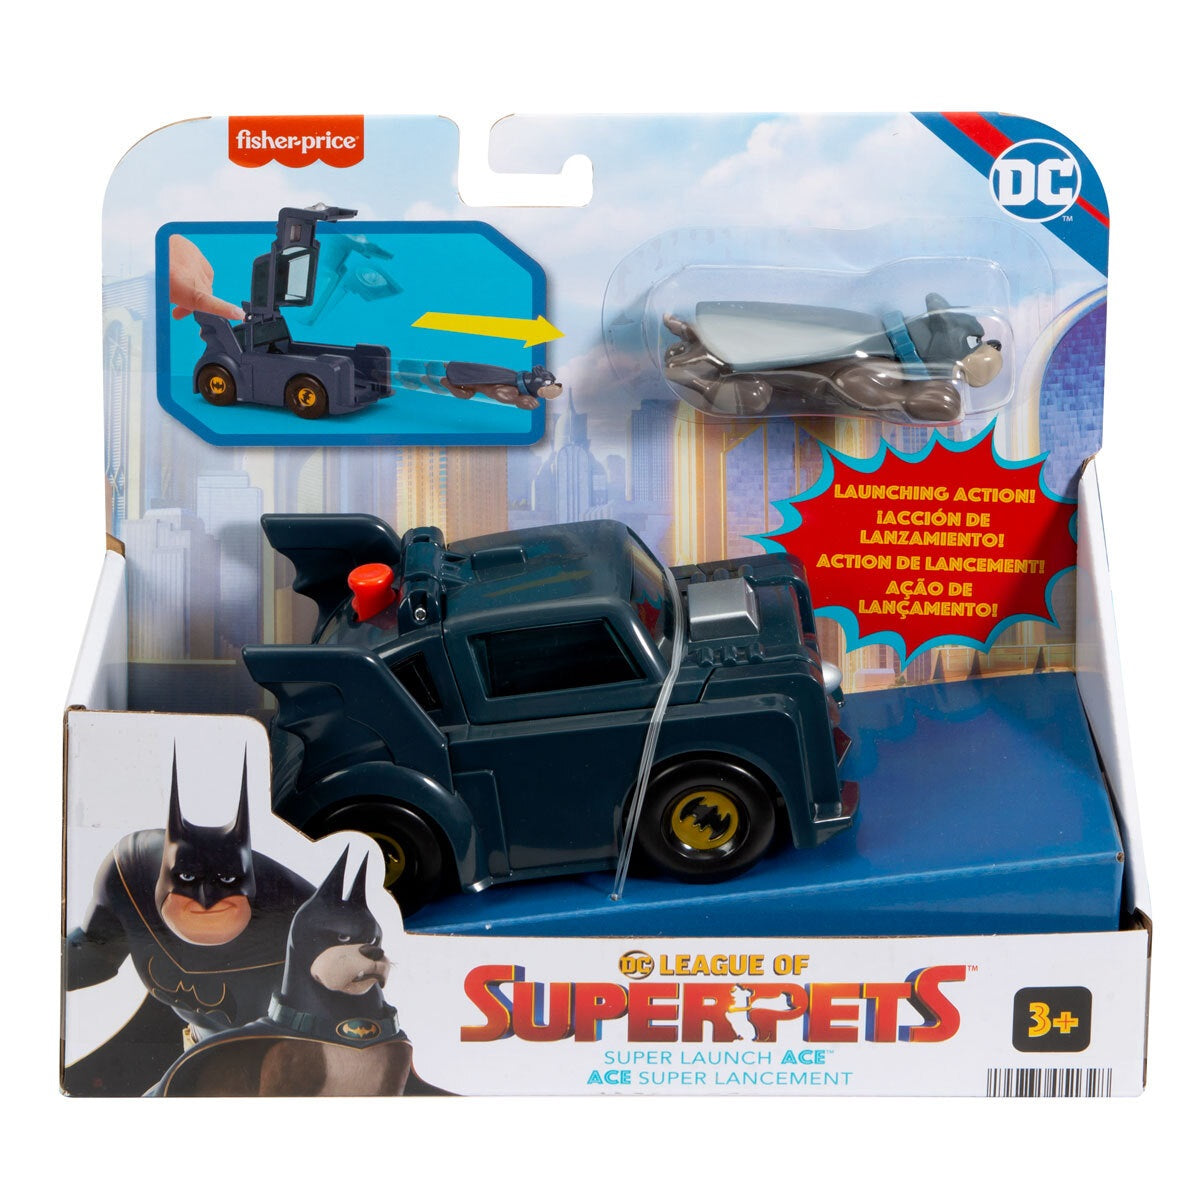 DC League of Super-Pets Super Launch Ace Batmobil Figure and Vehicle